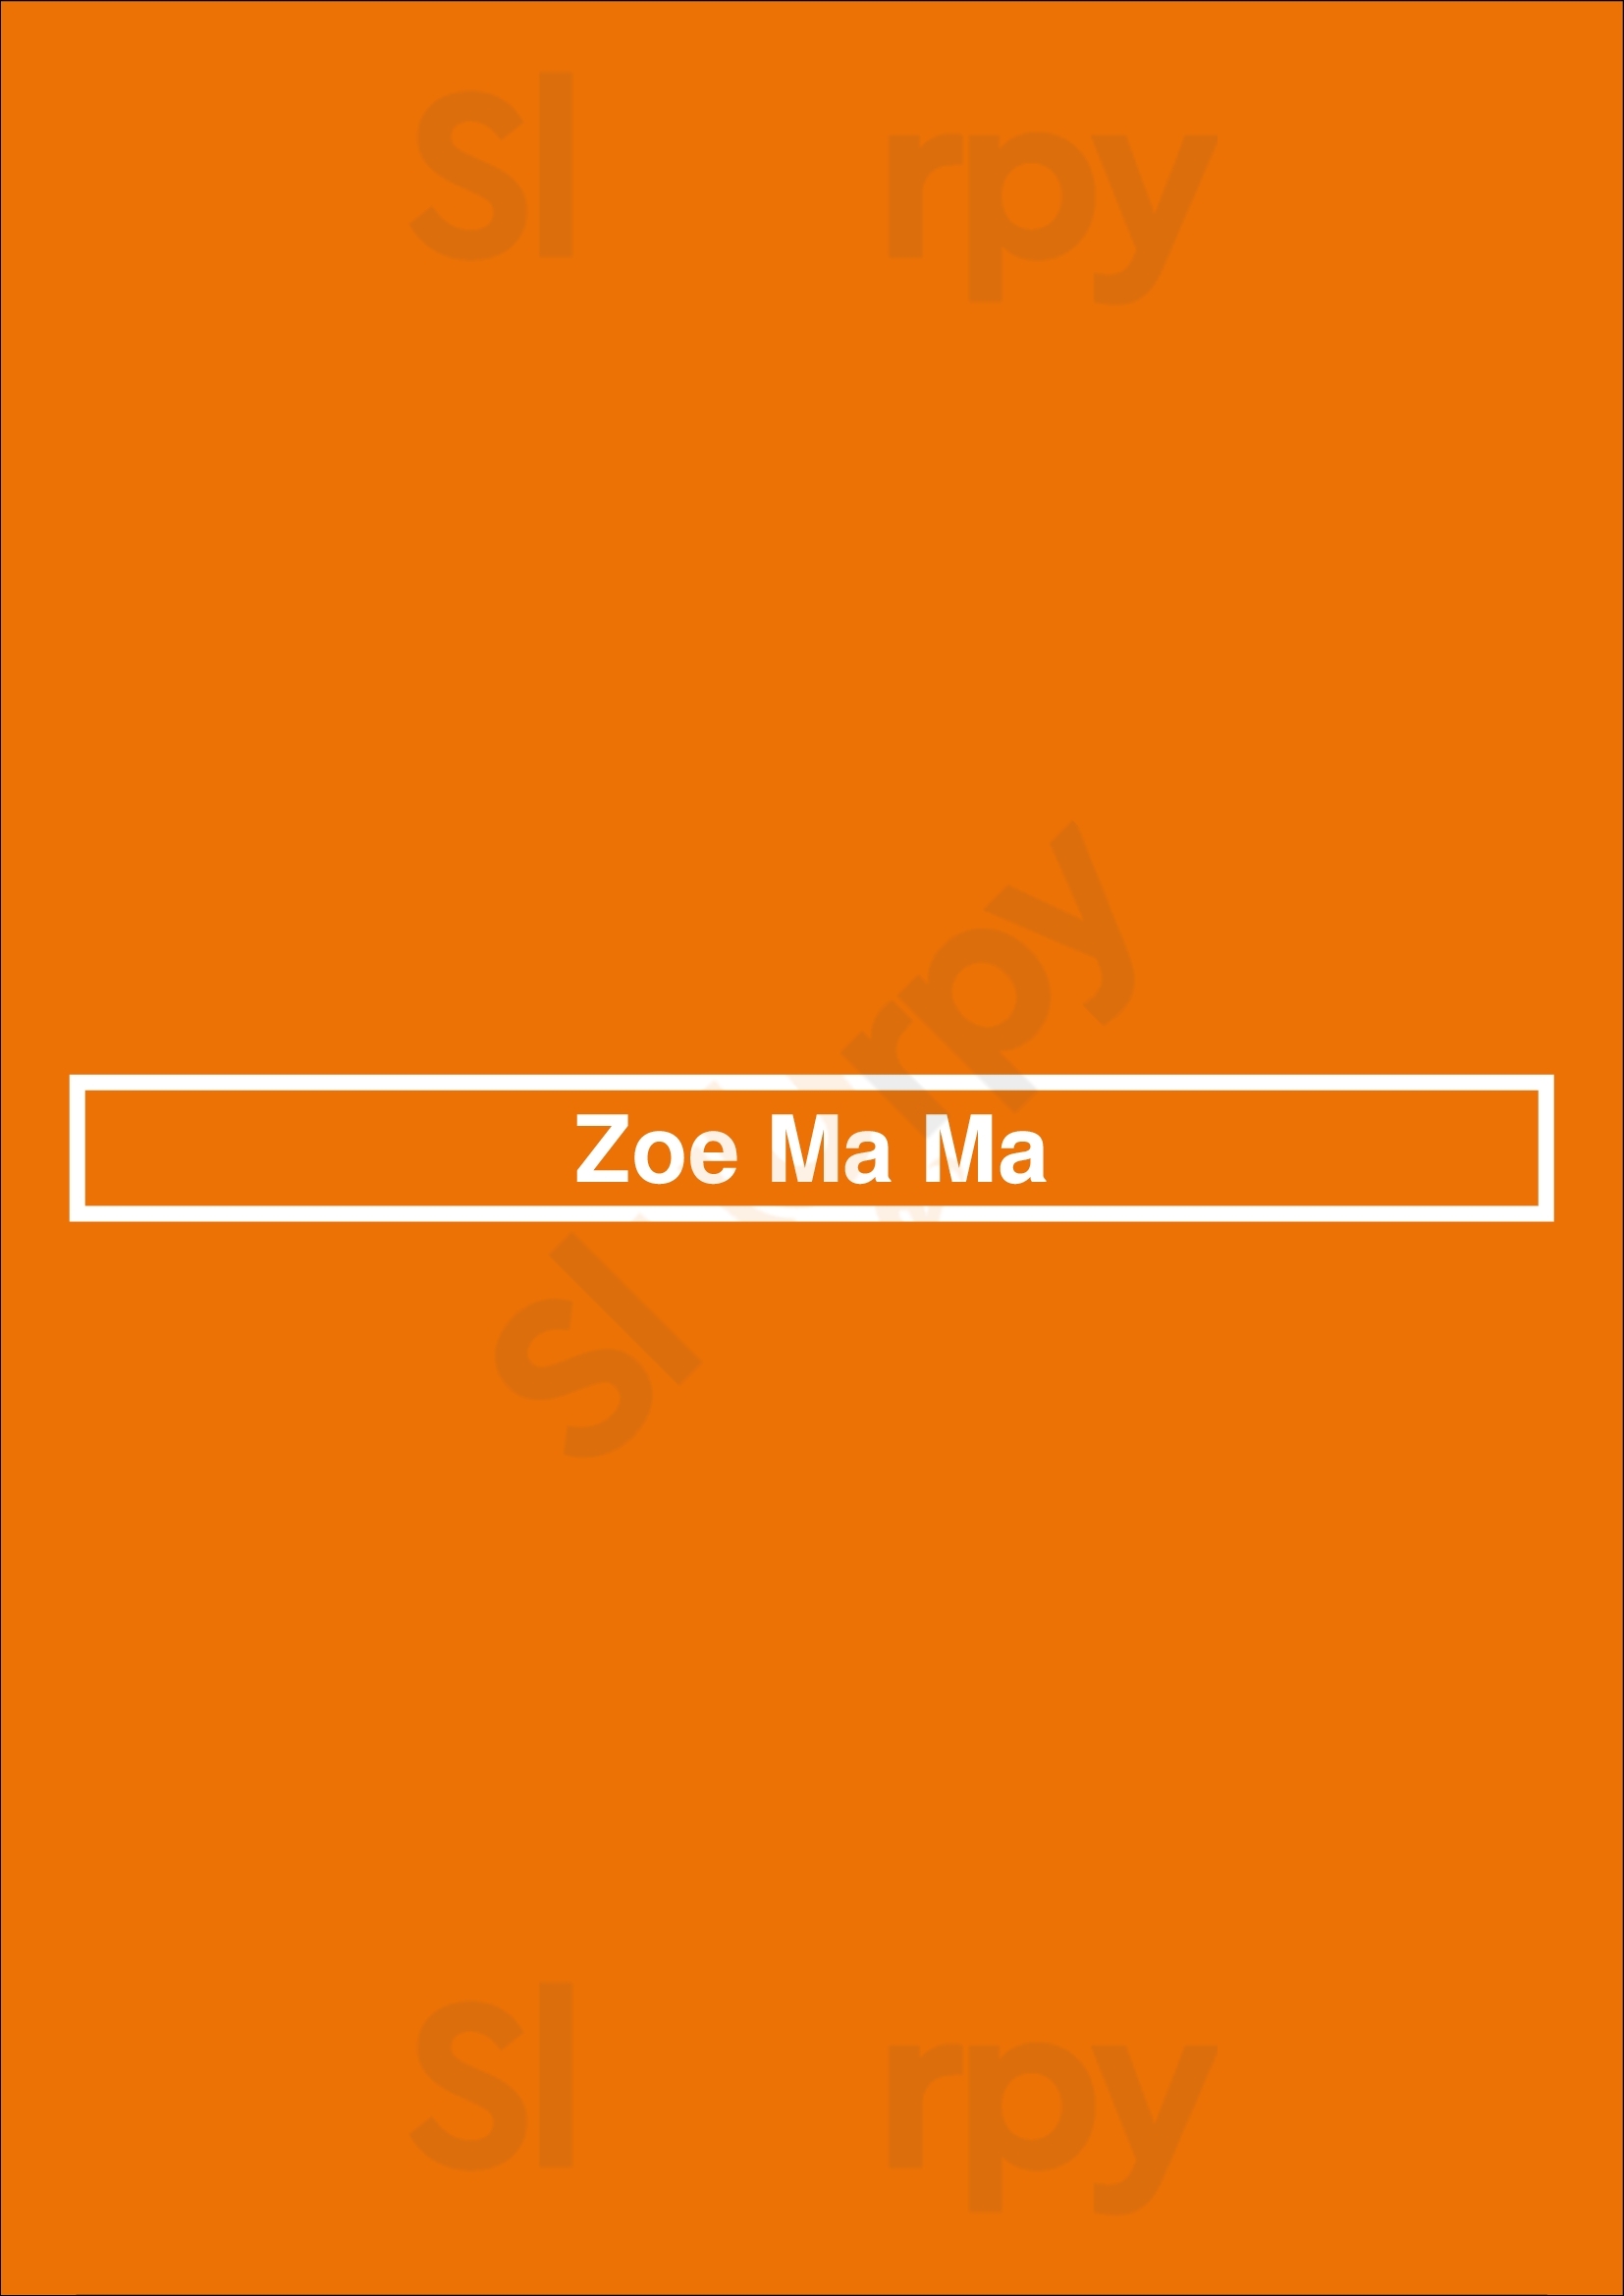 Zoe Ma Ma Denver Menu - 1